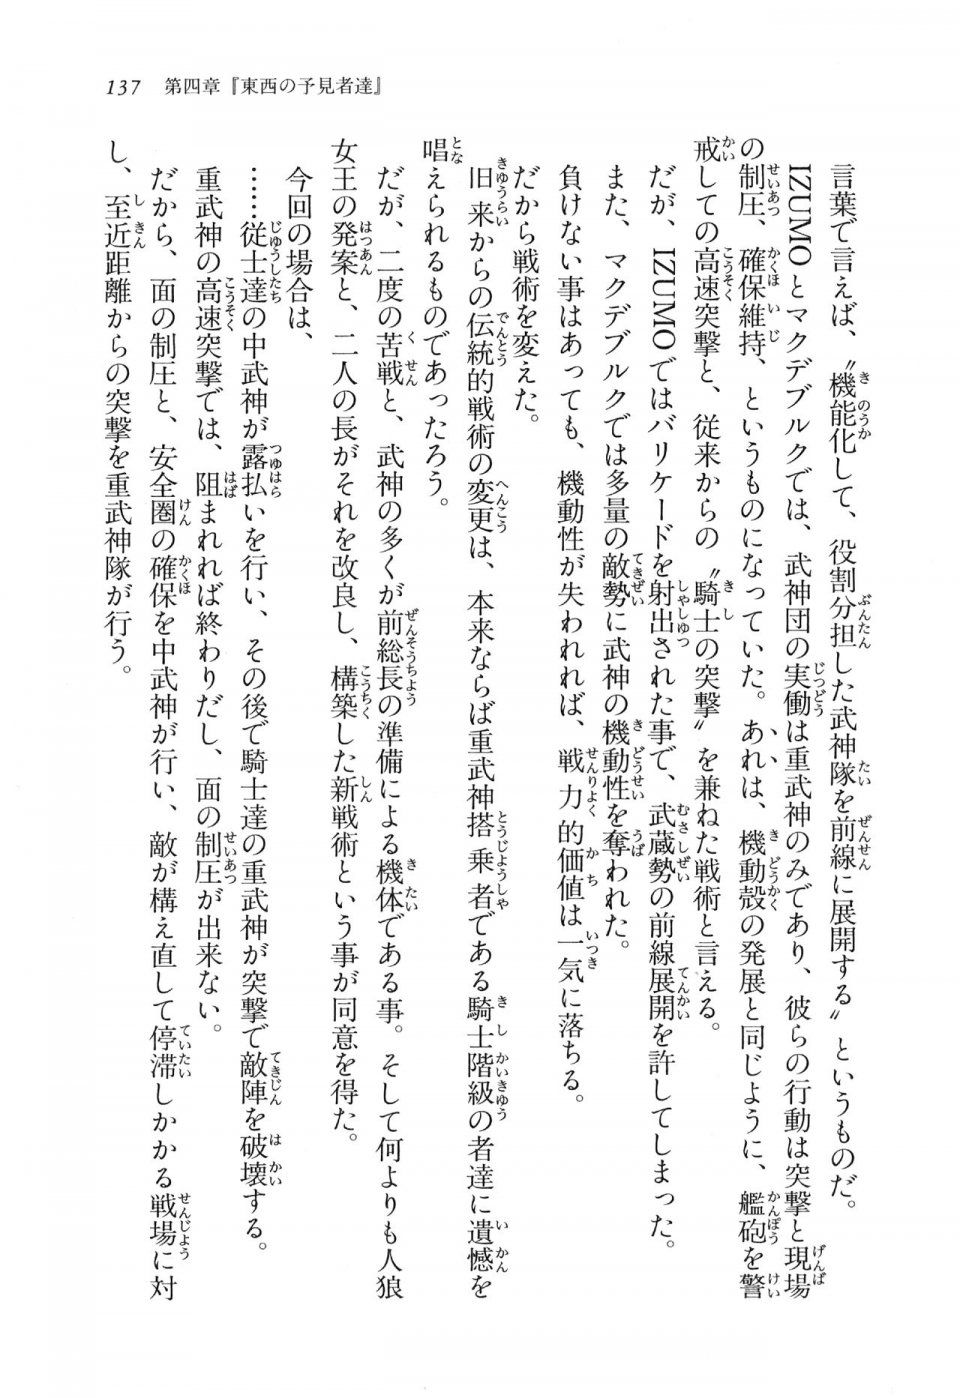 Kyoukai Senjou no Horizon LN Vol 11(5A) - Photo #137